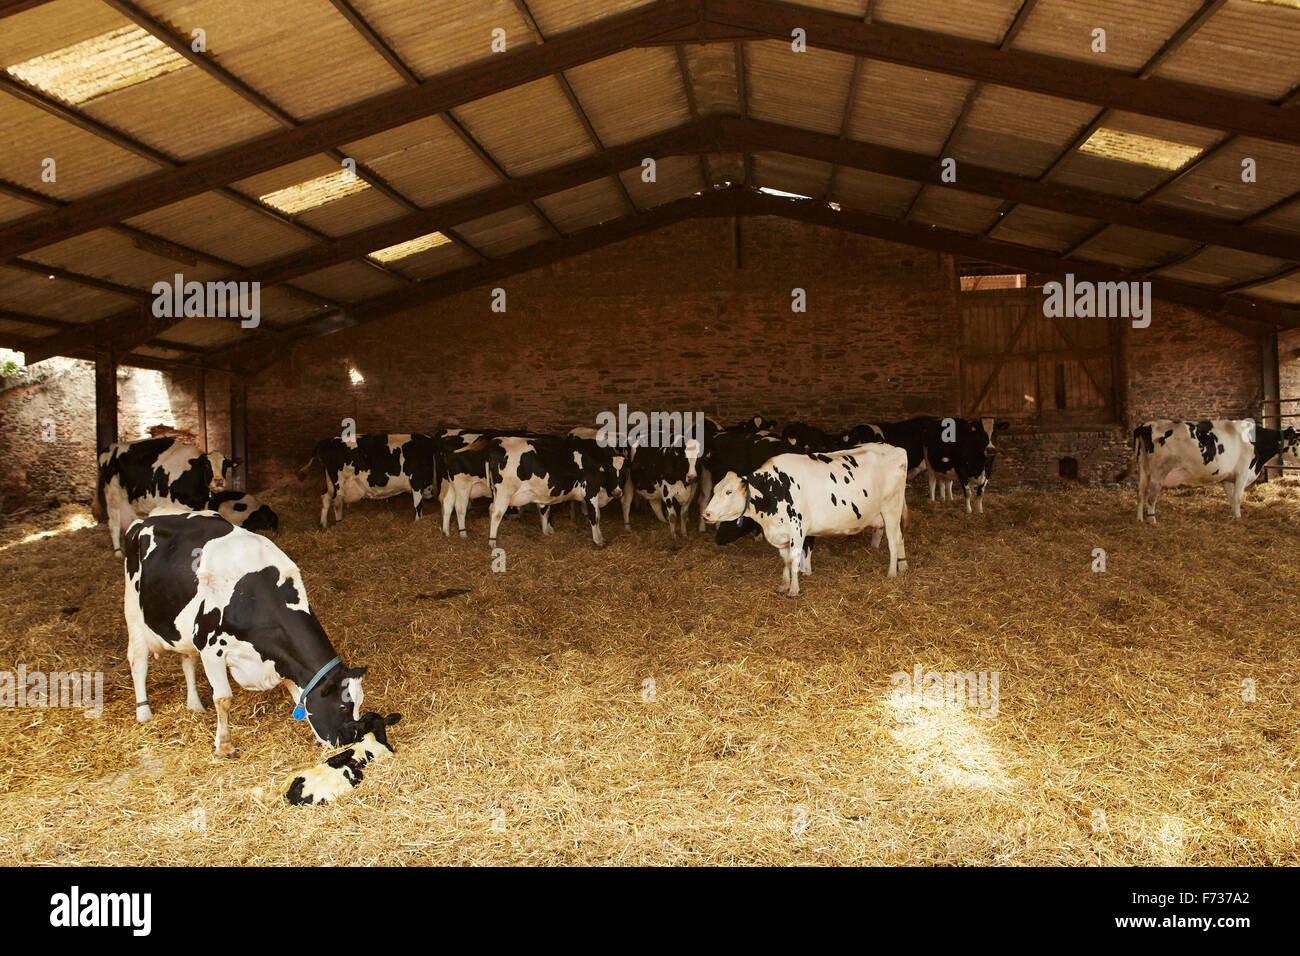 Eine Herde Kühe unter dem Deckmantel in einer Scheune im Heu, einem kuschelte eine Kalb Fütterung. Stockfoto